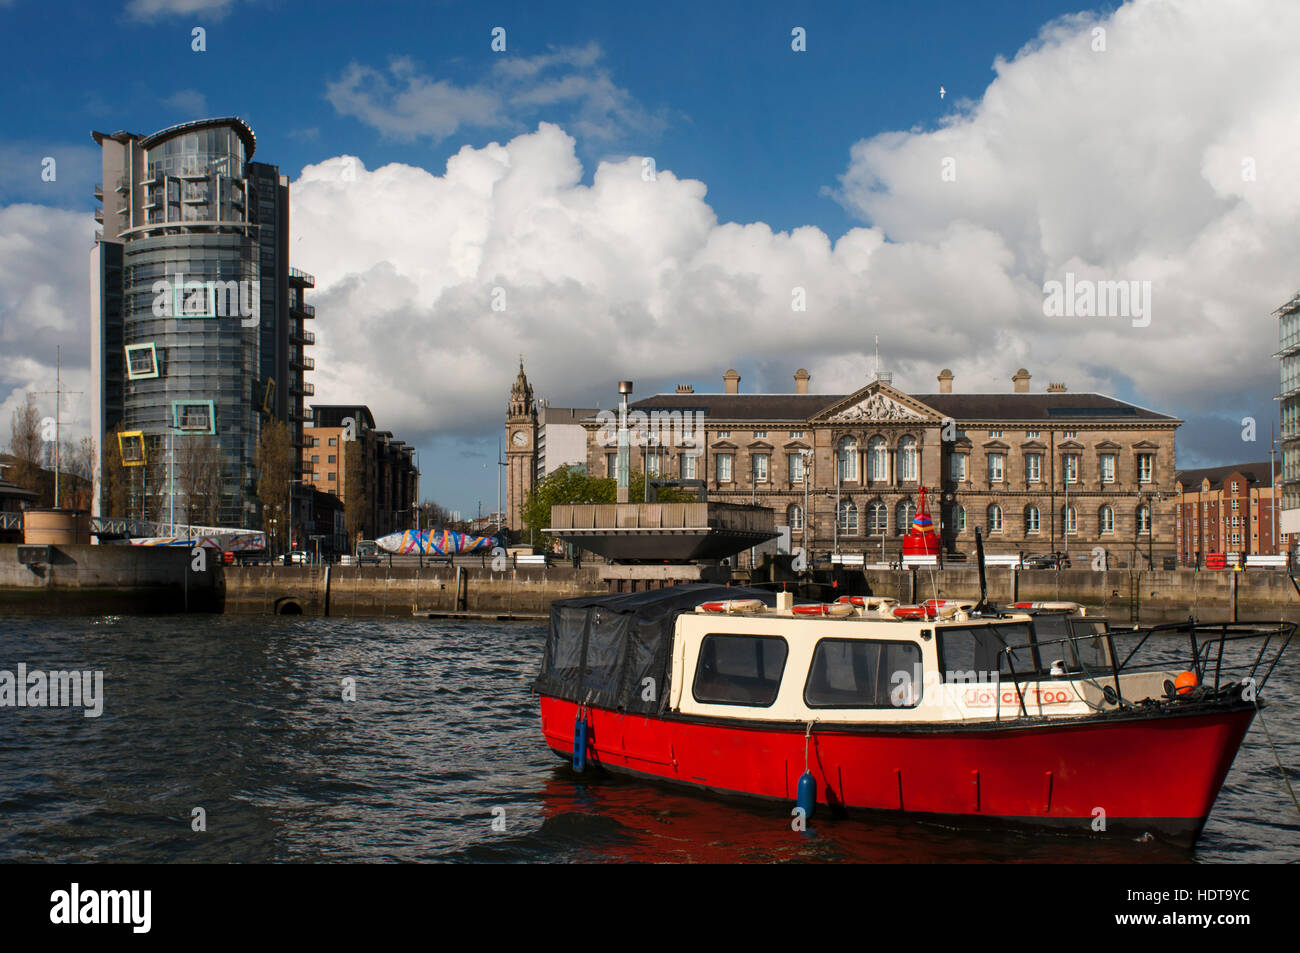 Die rote geschälten touristischen Boot Mona im Fluss Lagan in Belfast Nordirland Vereinigtes Königreich UK festgemacht. Lagan Boat Company laufen zwei verschiedene tou Stockfoto